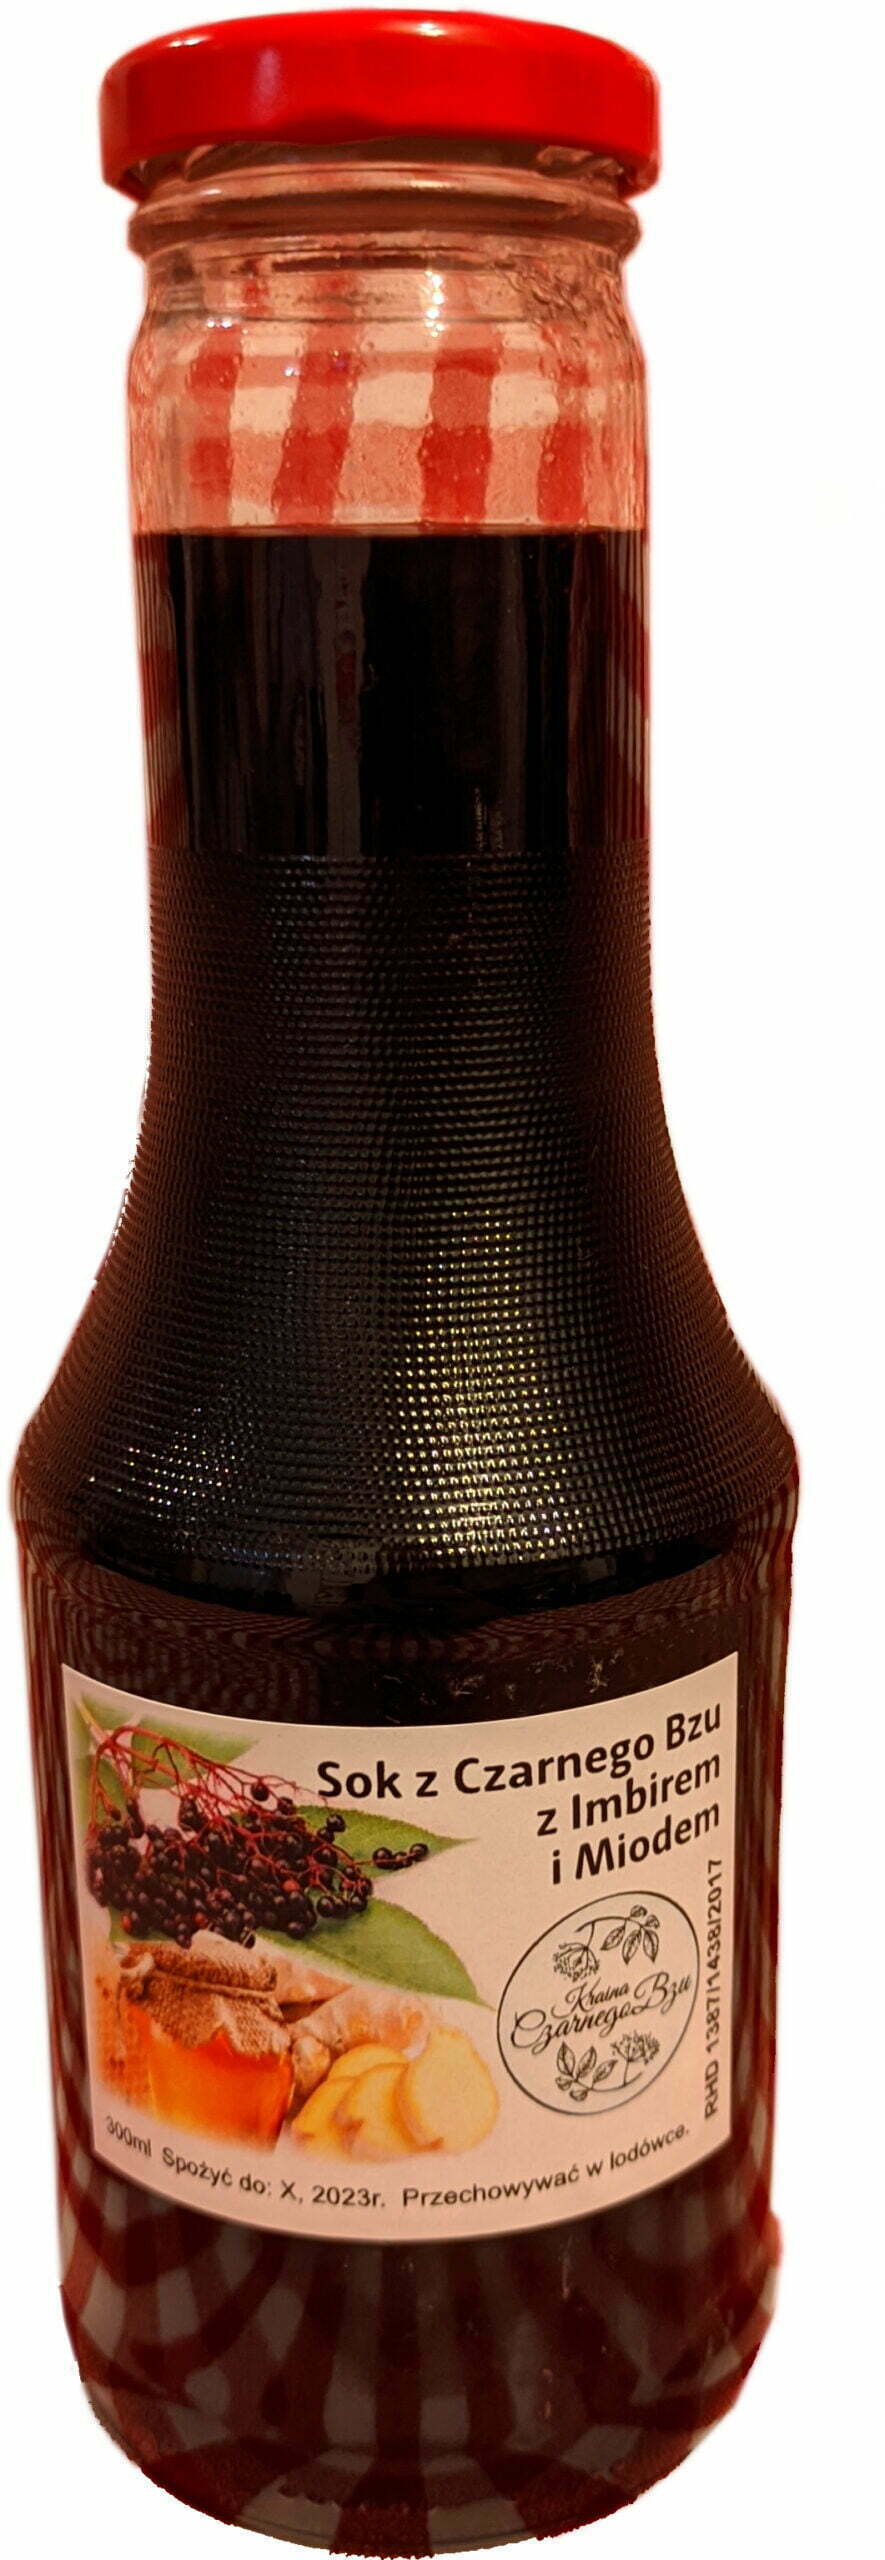 Butelka syropu z czarnego bzu z imbirem i miodem